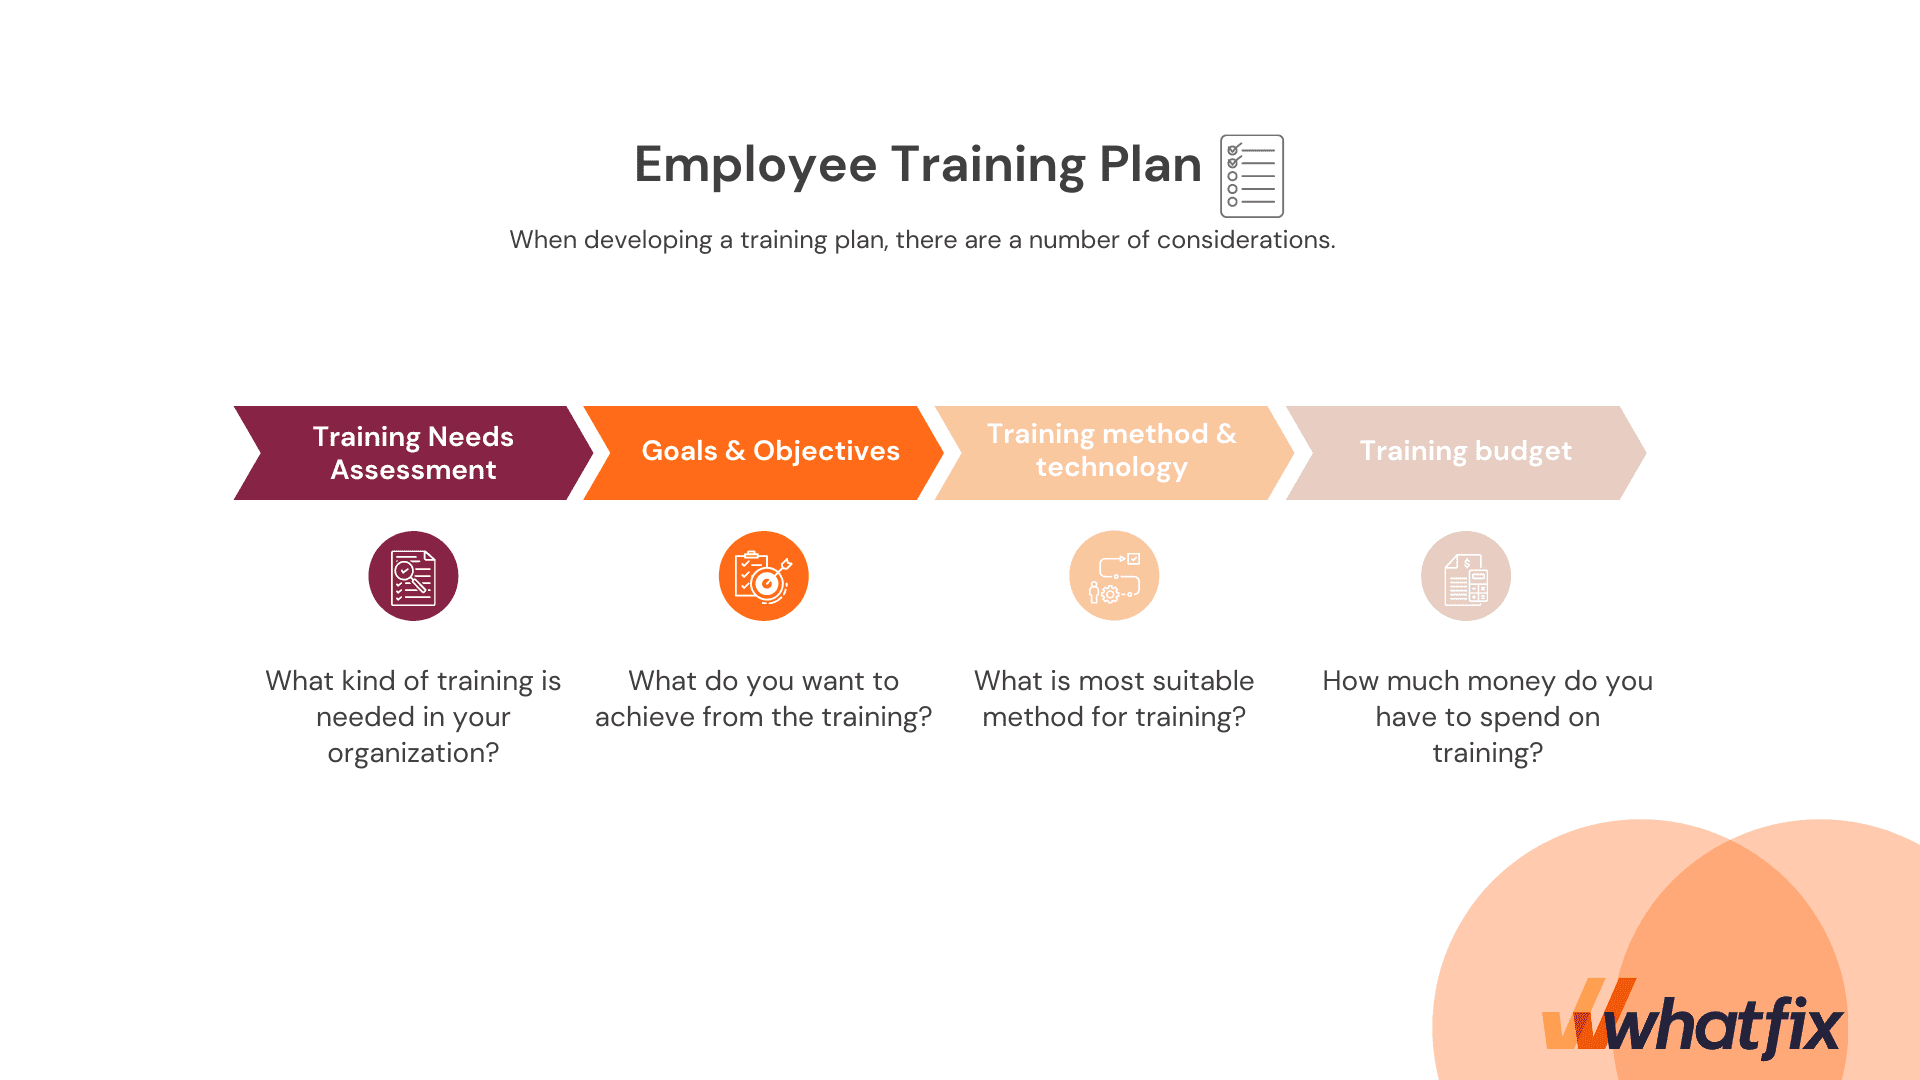 Employee Training Plan